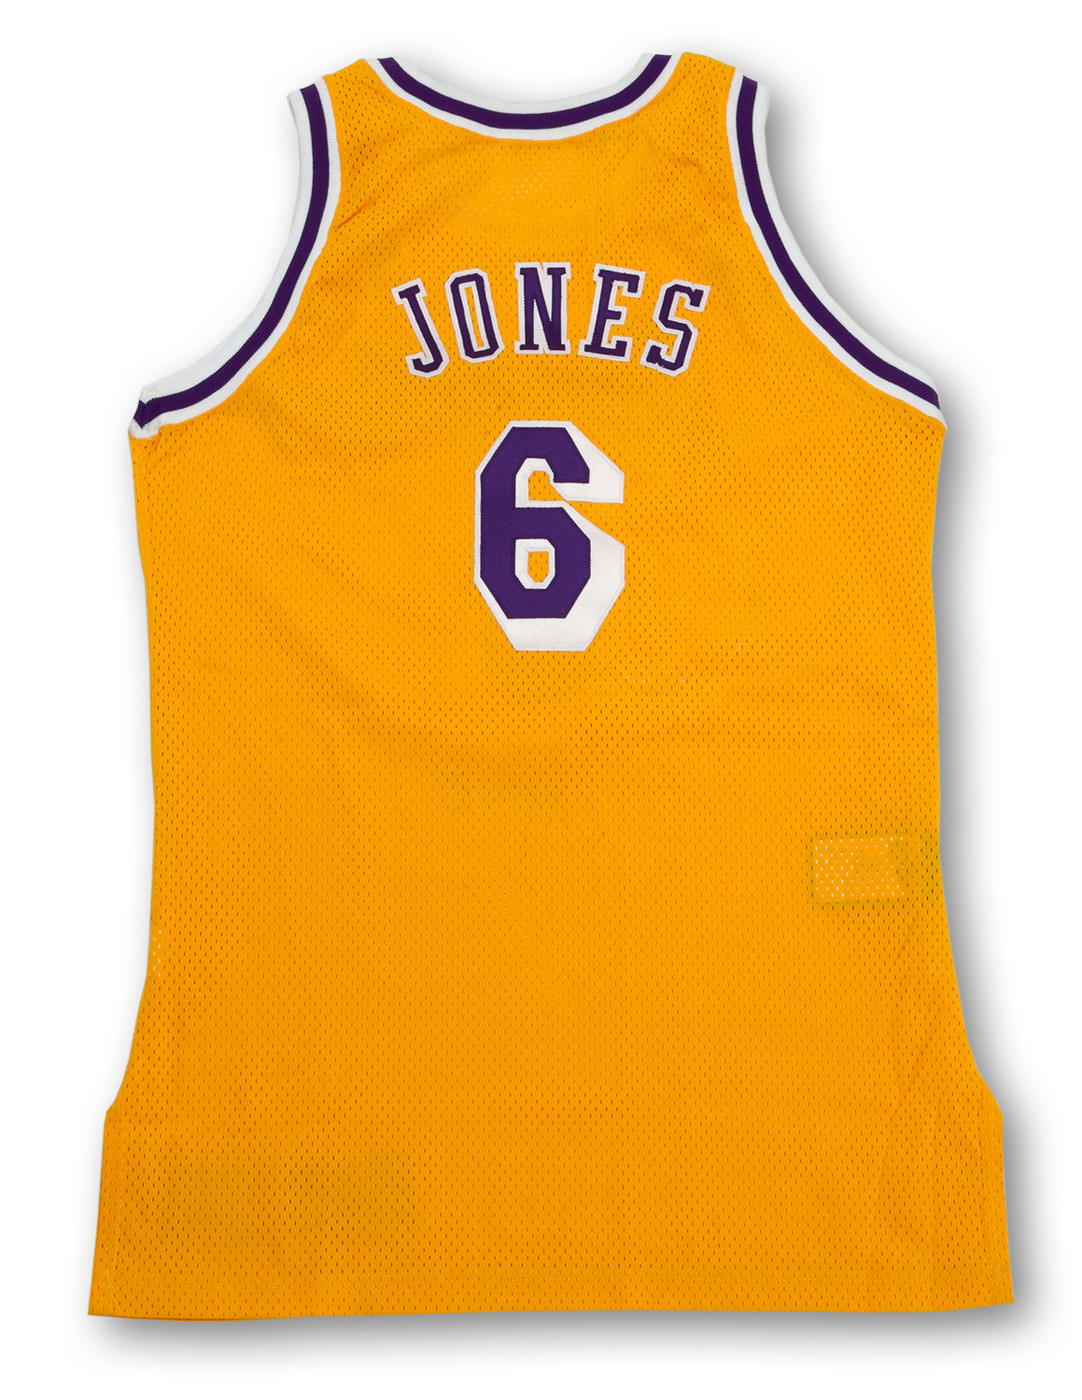 Eddie Jones Los Angeles Lakers Authentic Nike Game Jersey